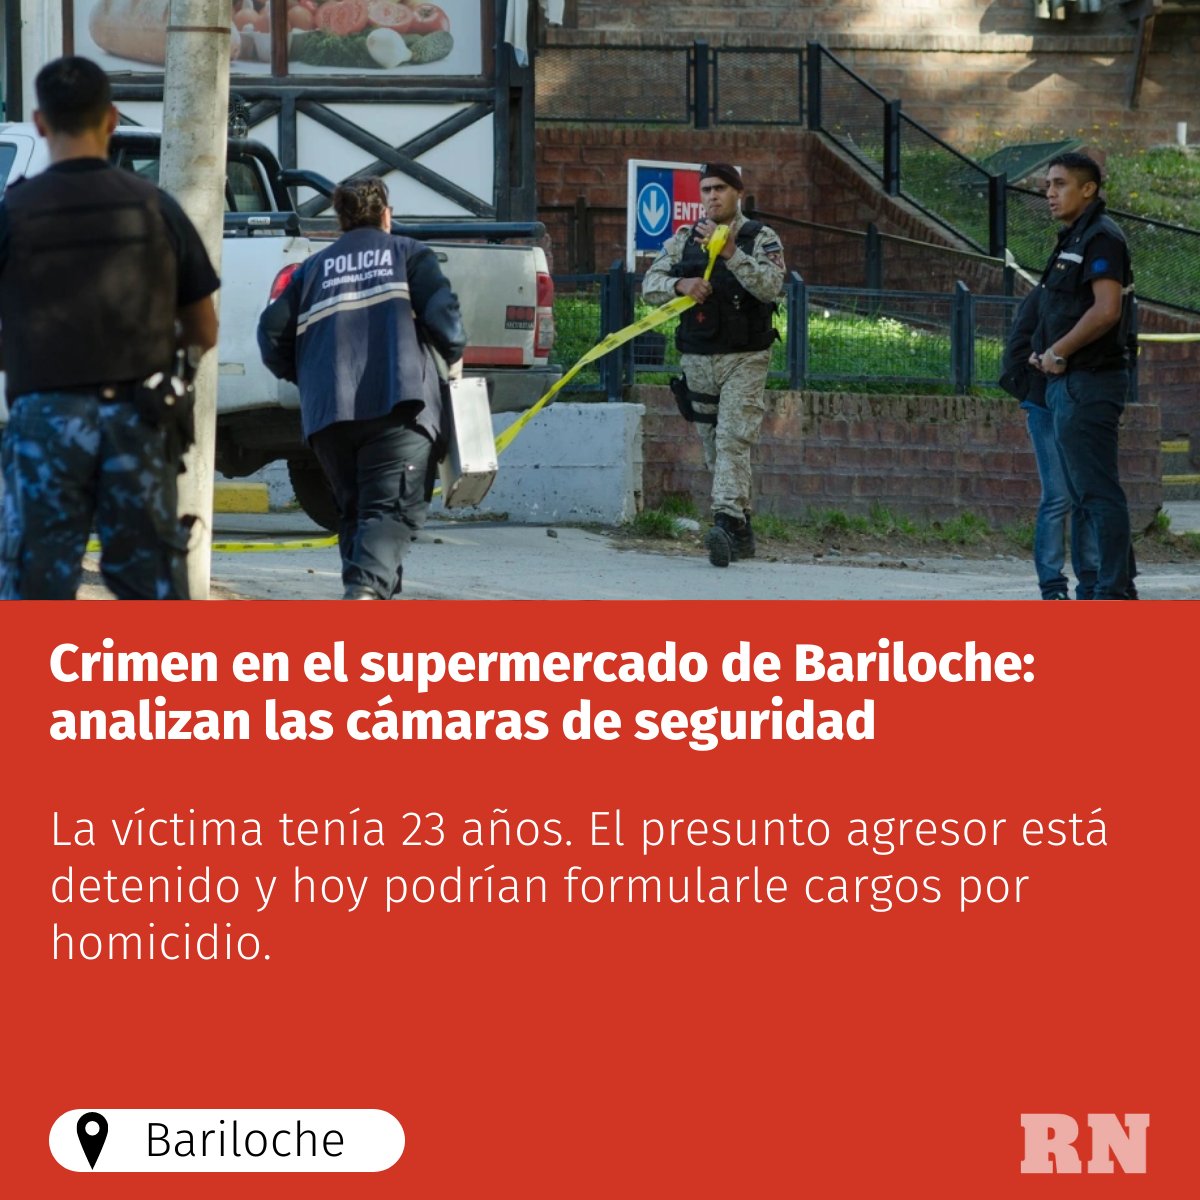 🚨 #CrimenEnElSupermercado 

📌 Analizarán las cámaras de seguridad para recolectar información sobre el homicidio de #Bariloche: un joven fue atacado con un arma blanca en un playón de estacionamiento.

Los detalles del caso 👇👉 buff.ly/3sjVrVj